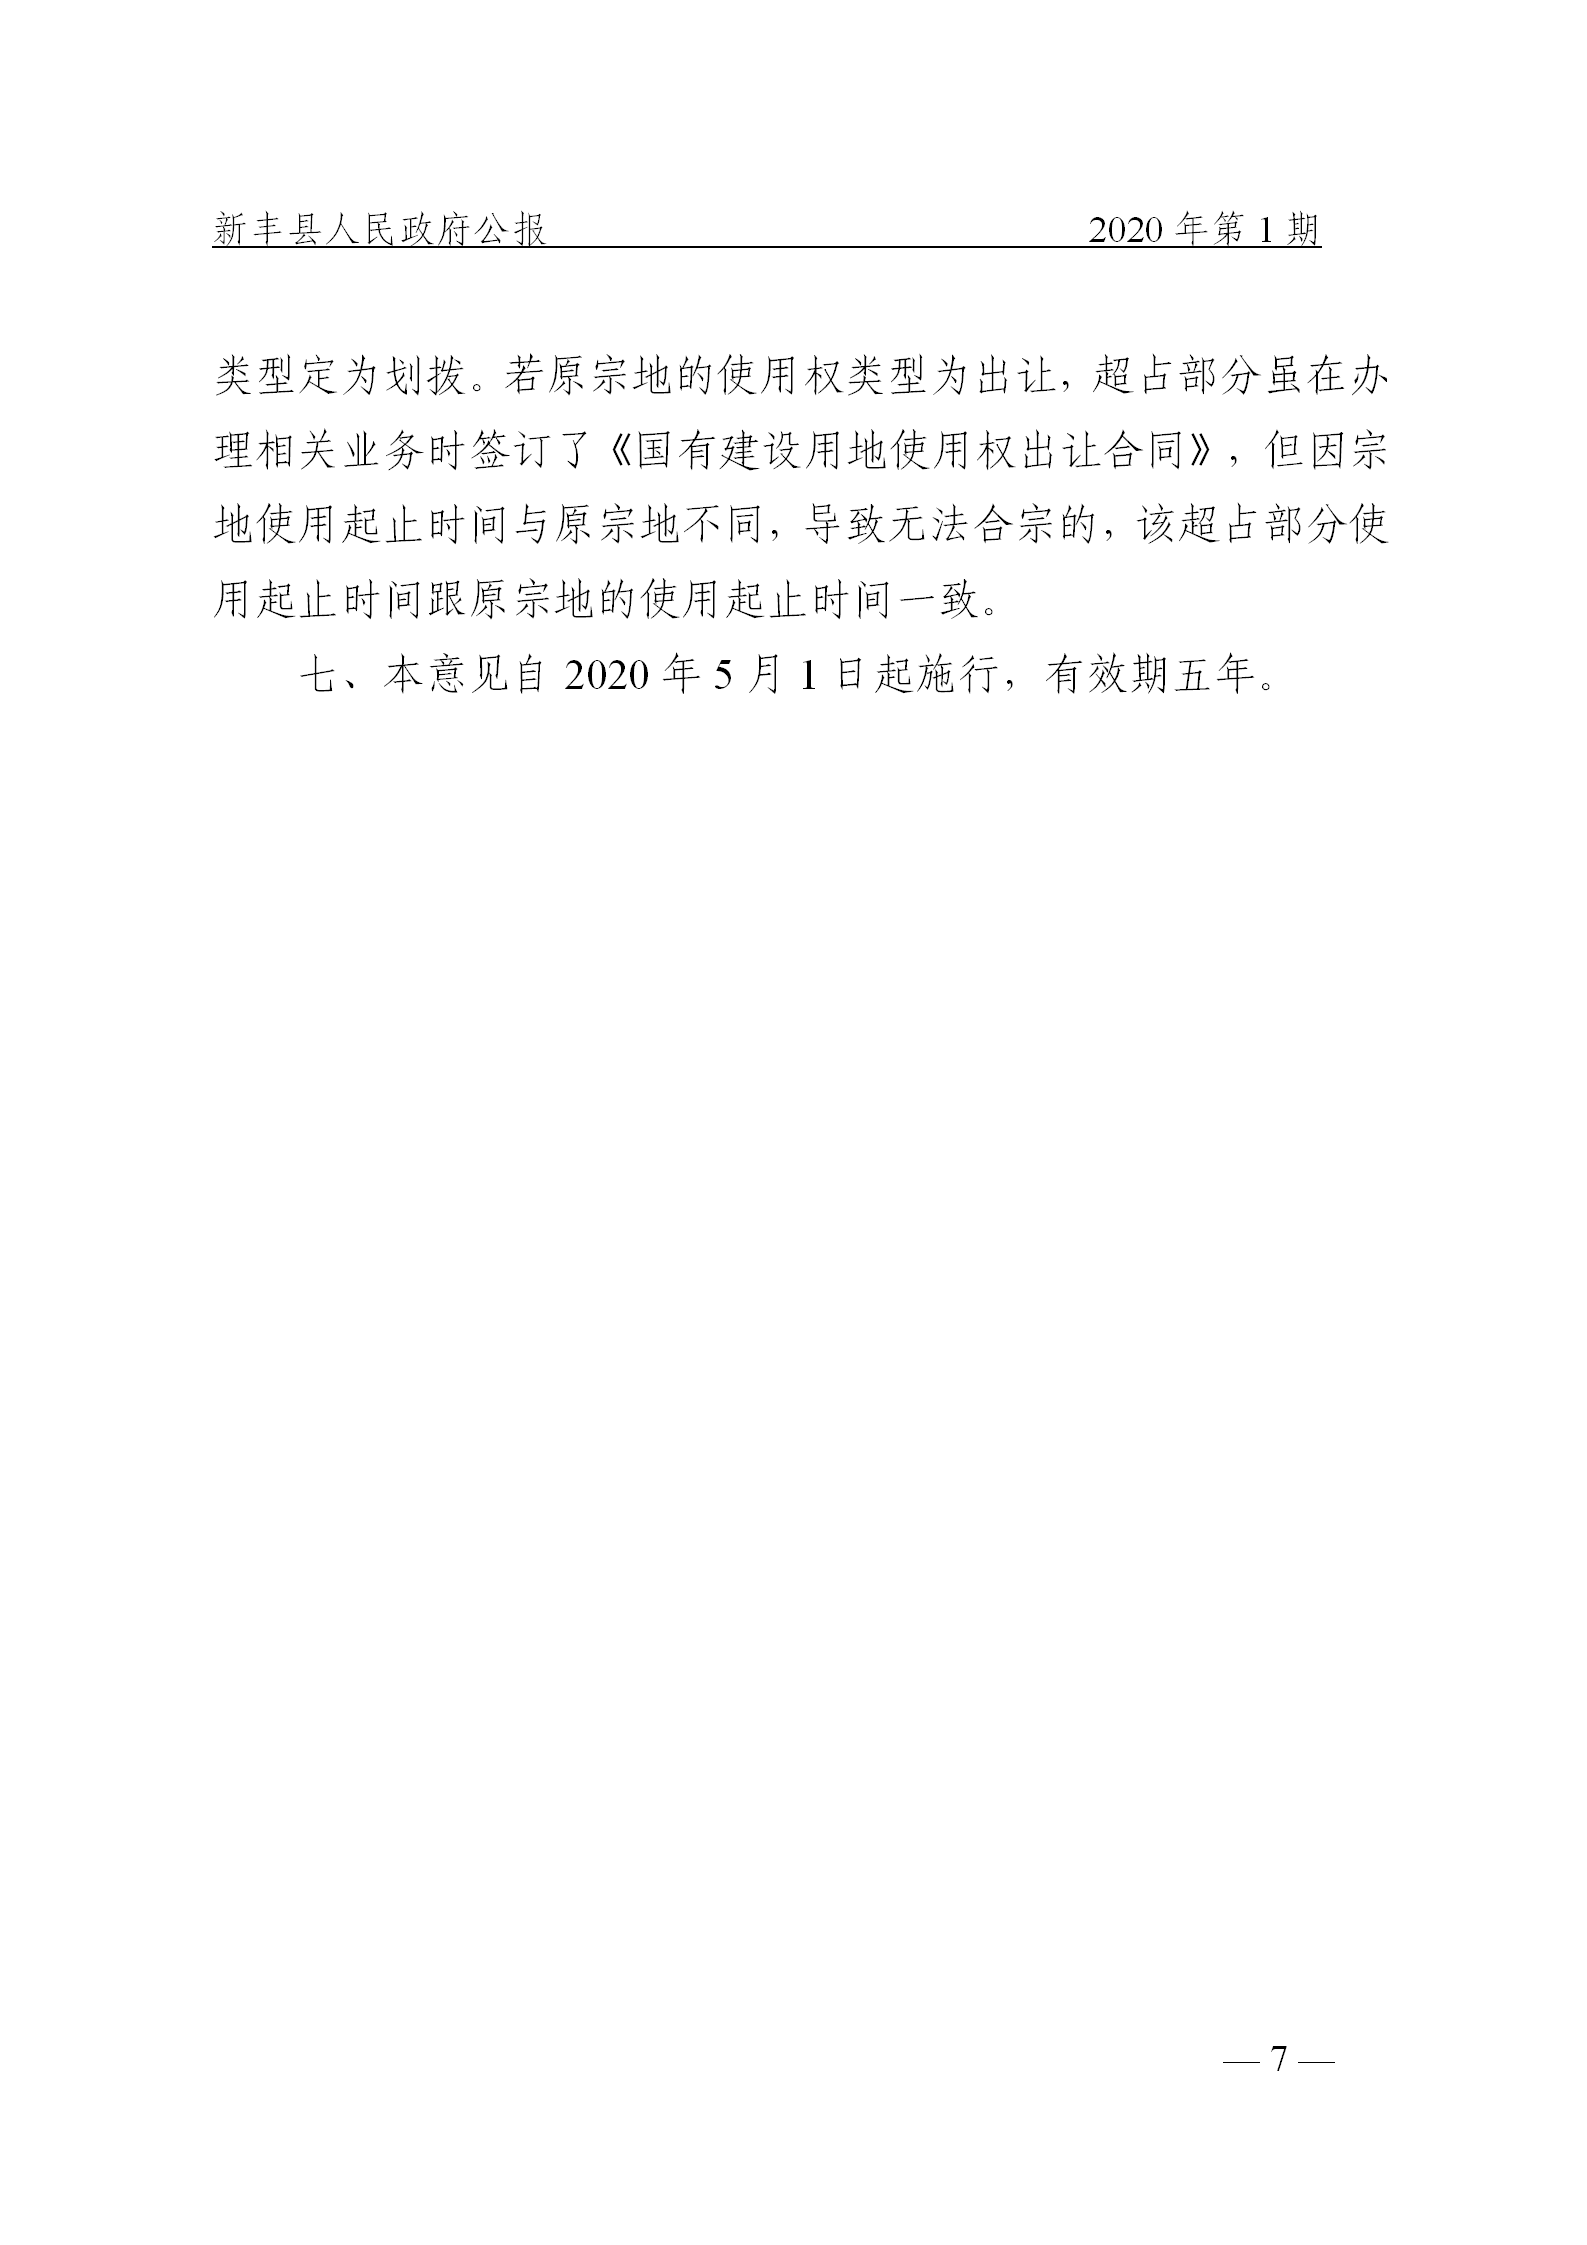 《新丰县人民政府公报》2020年第1期(1)_07.png